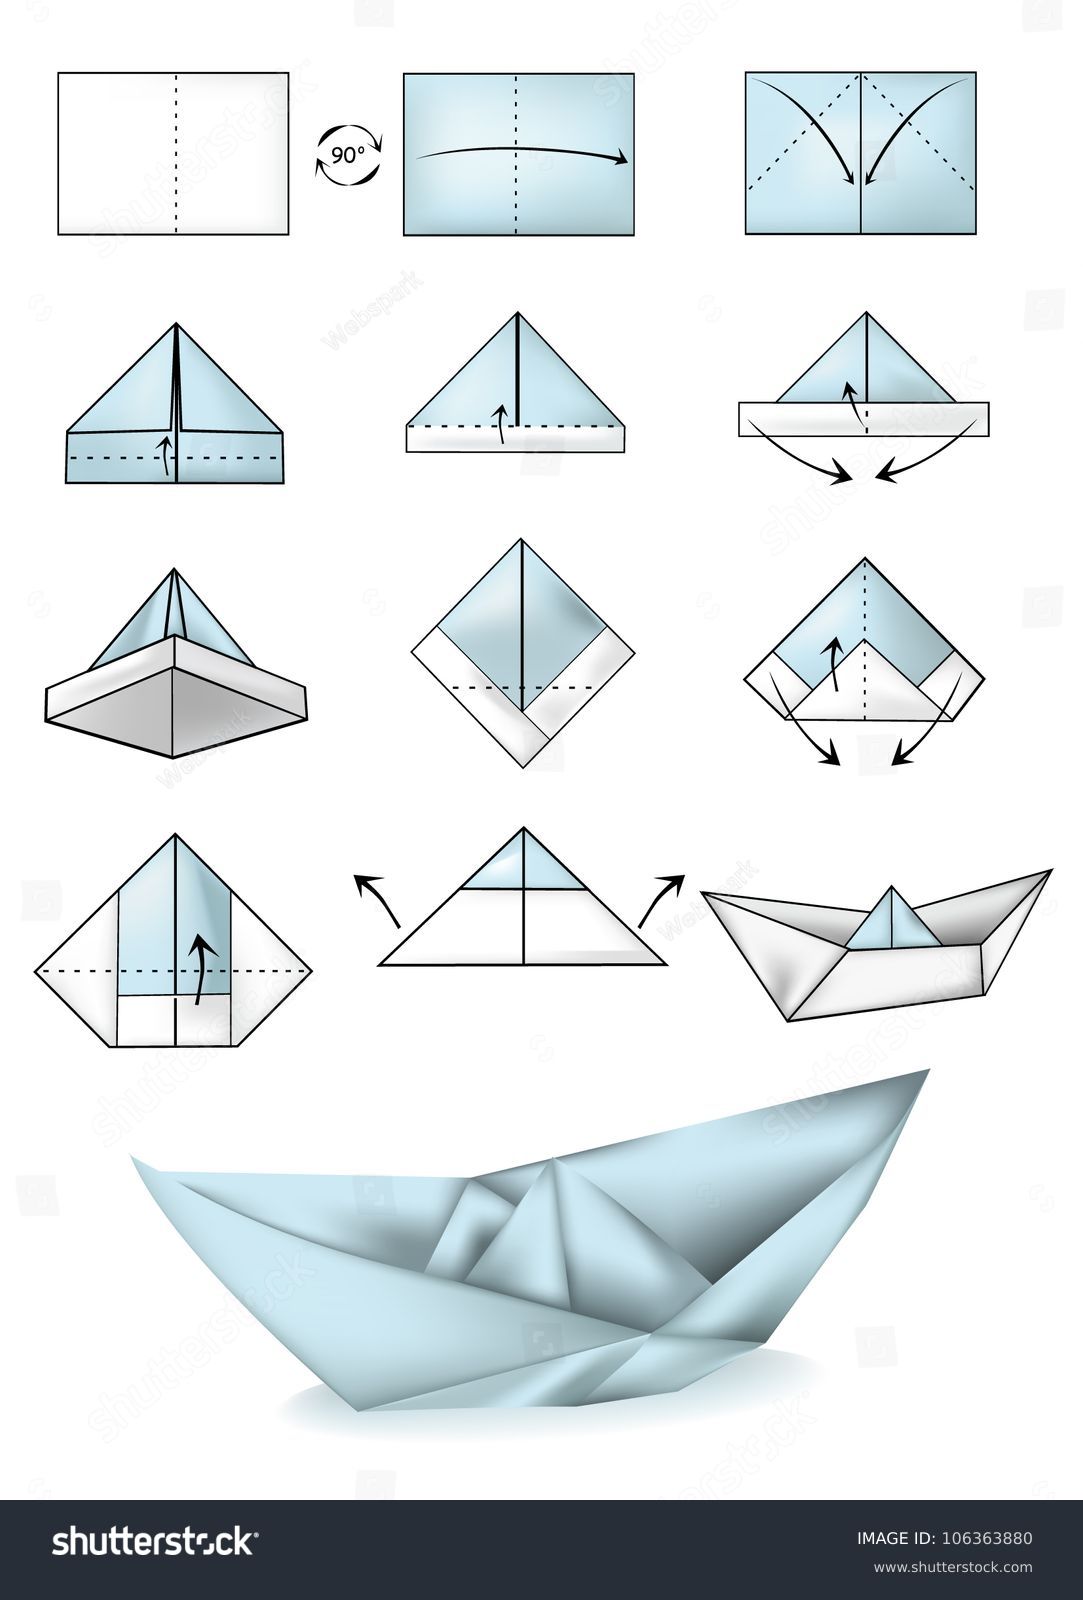 paper-boat-instructions-illustration-tutorial-stock-vector-106363880